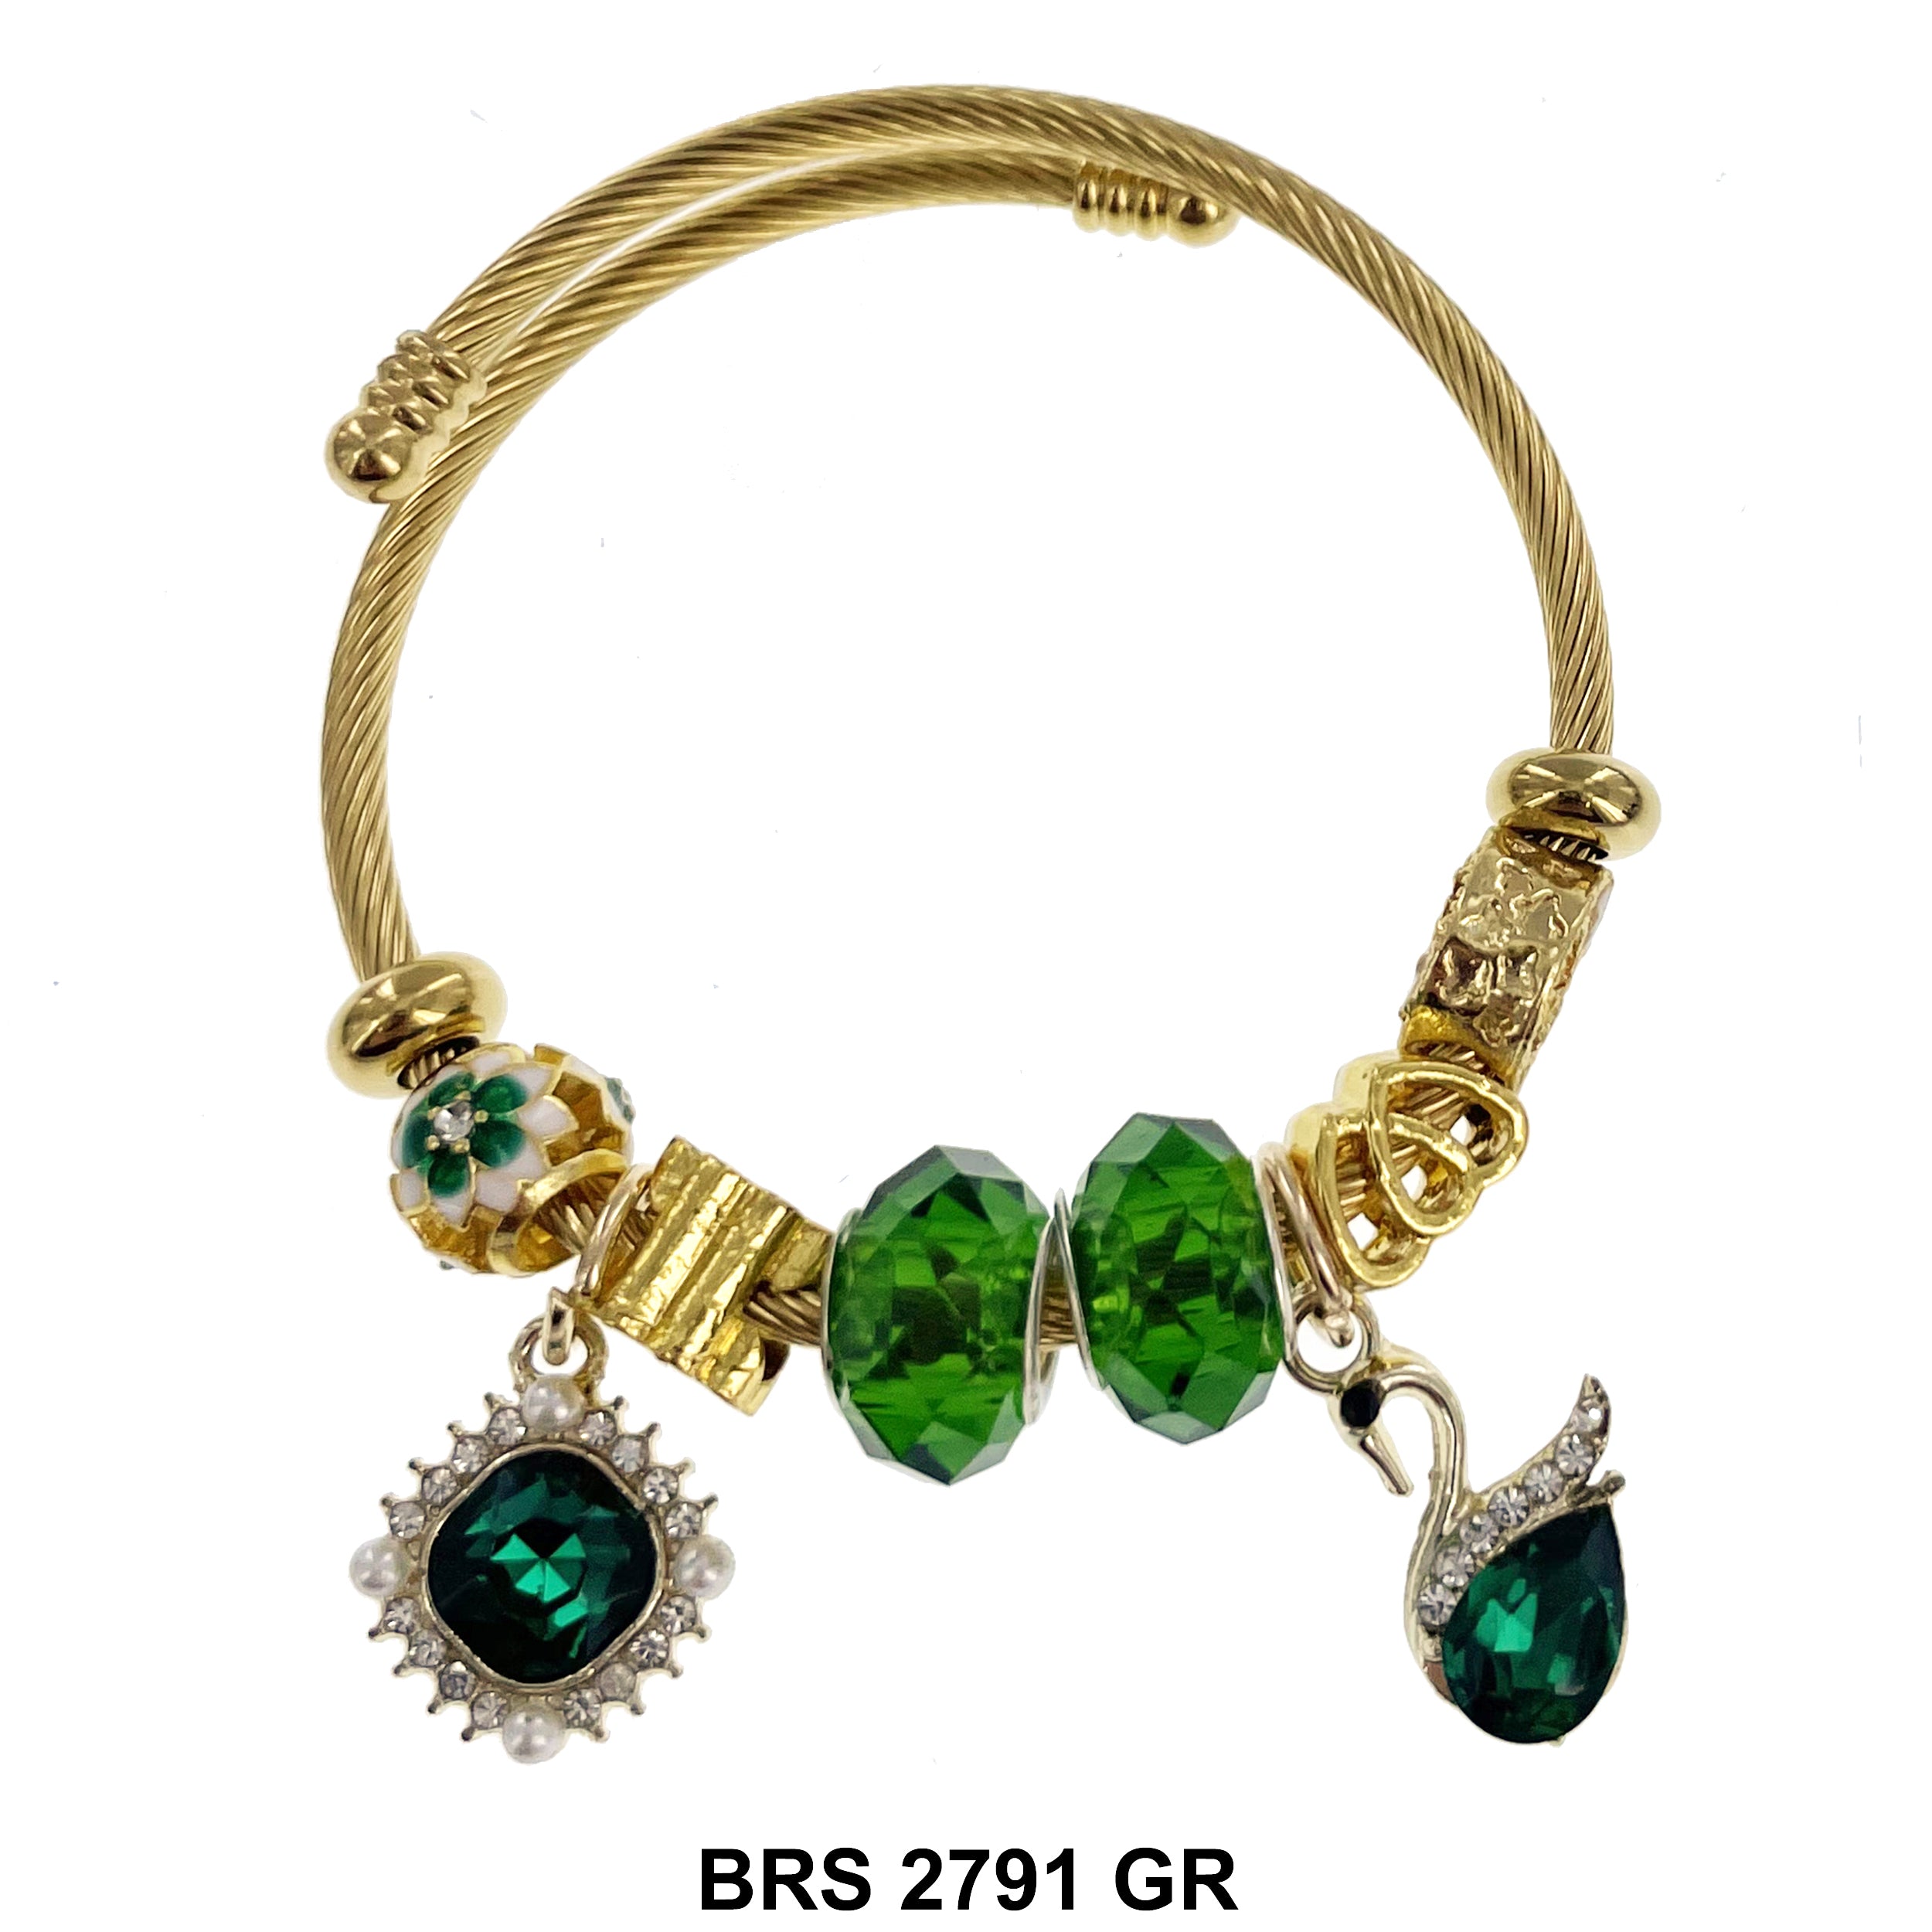 Hanging Charm Bracelet BRS 2791 GR